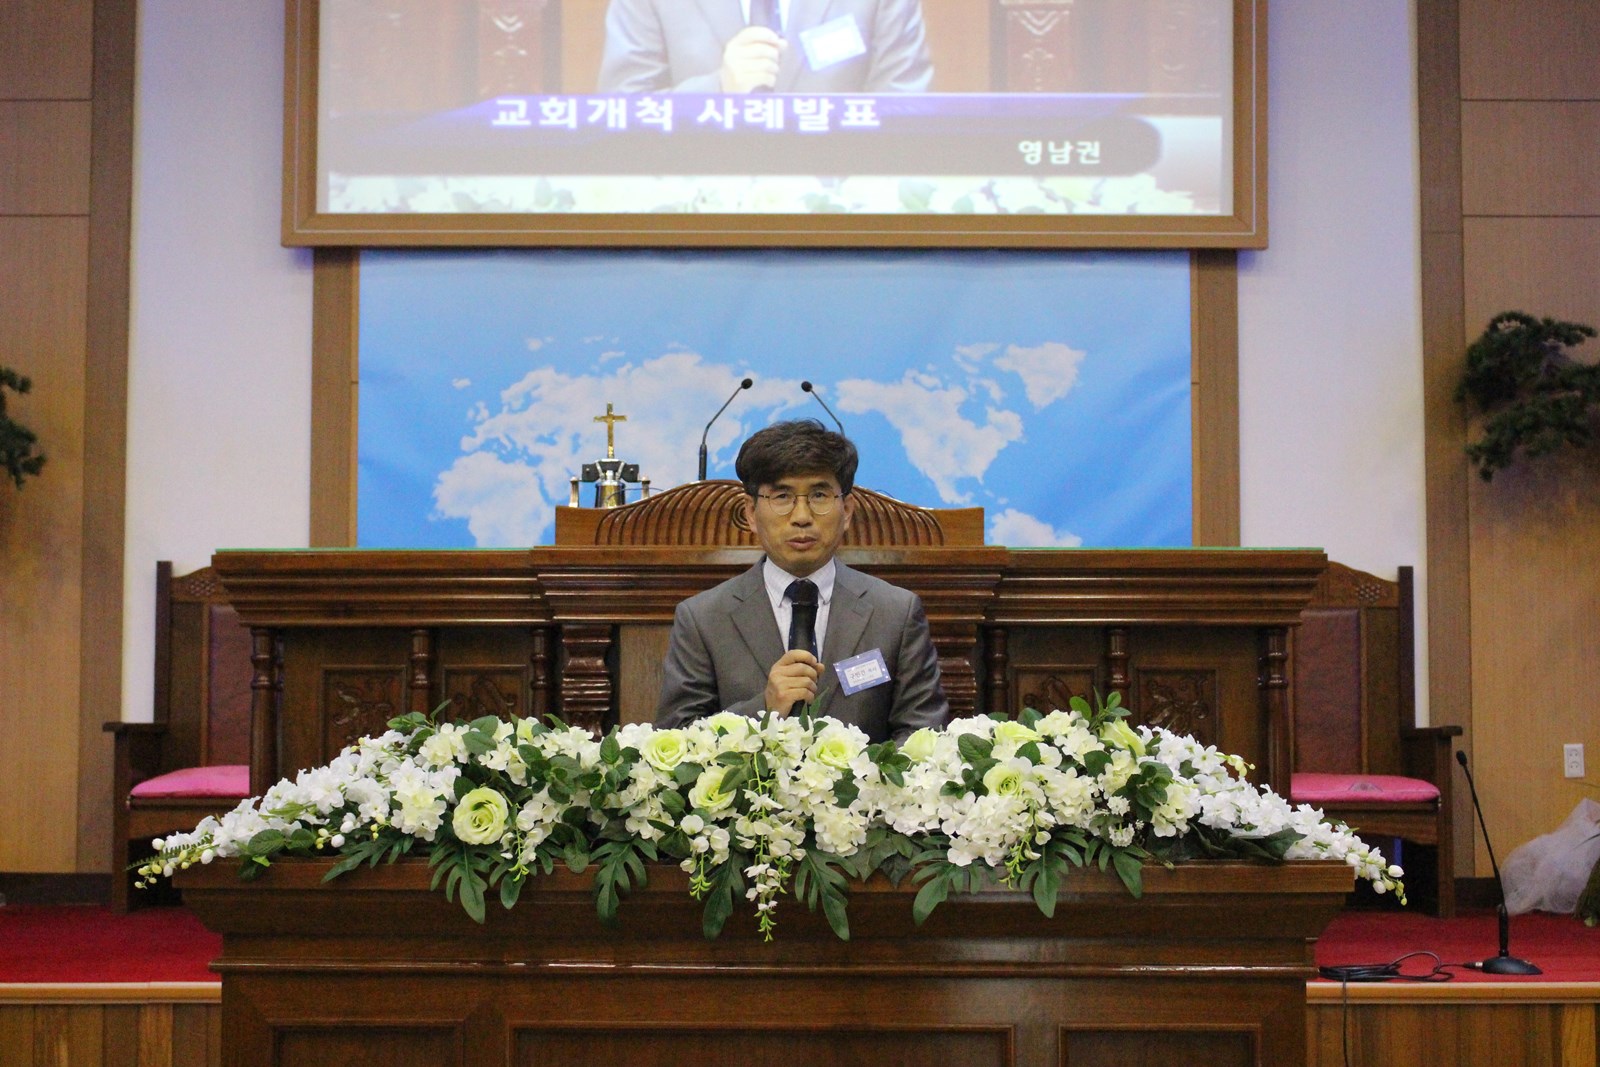 ▲노회가 주도하는 교회 개척 사례를 발표하고 있는 구빈건 목사